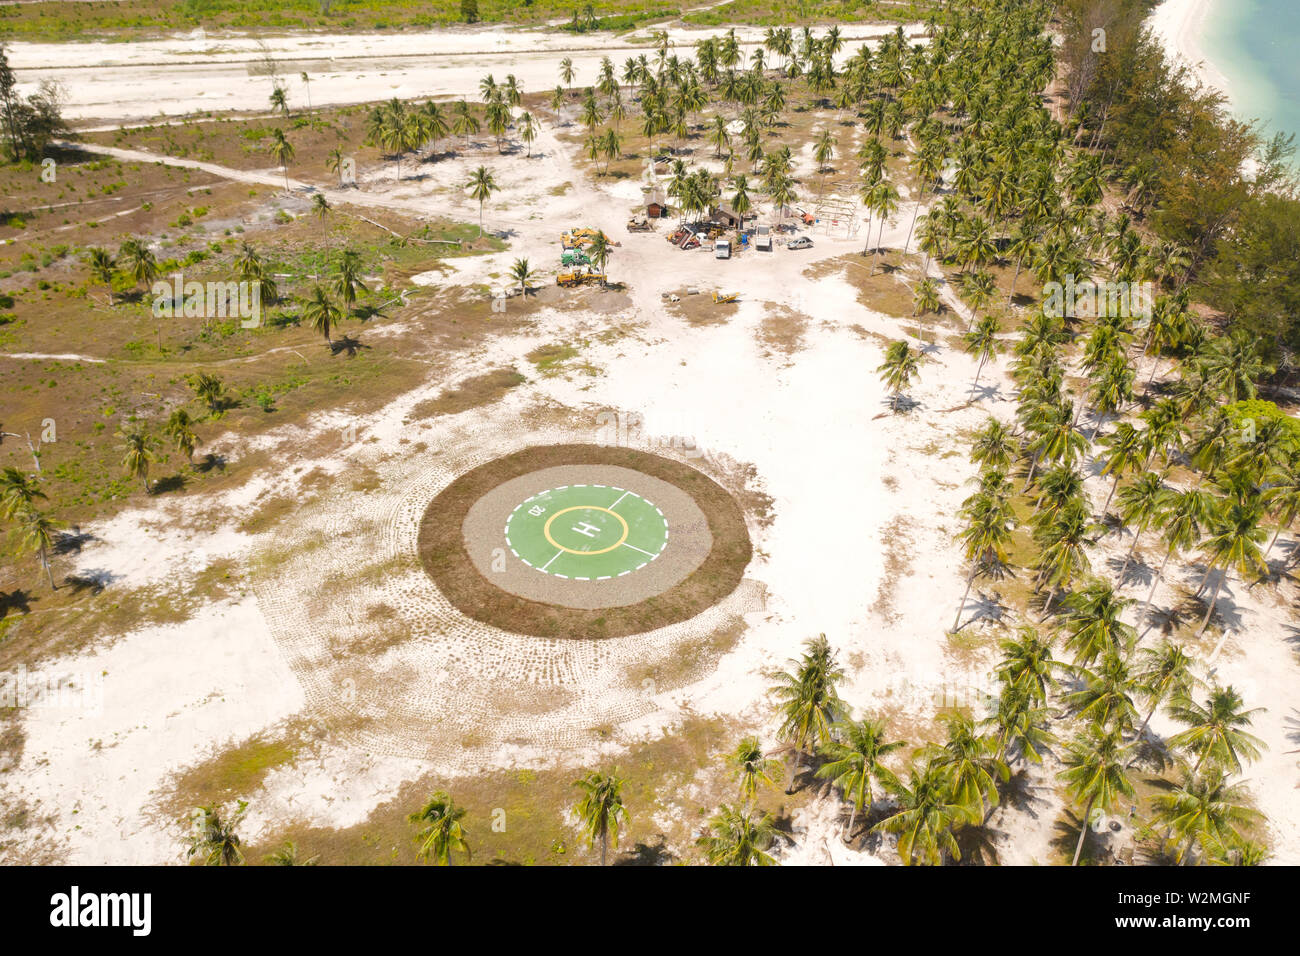 Hubschrauberlandeplatz auf einer tropischen Insel. Balabac, Palawan, Philippinen. Hubschrauberlandeplatz unter Palmen auf einer tropischen Insel, Ansicht von oben. Stockfoto